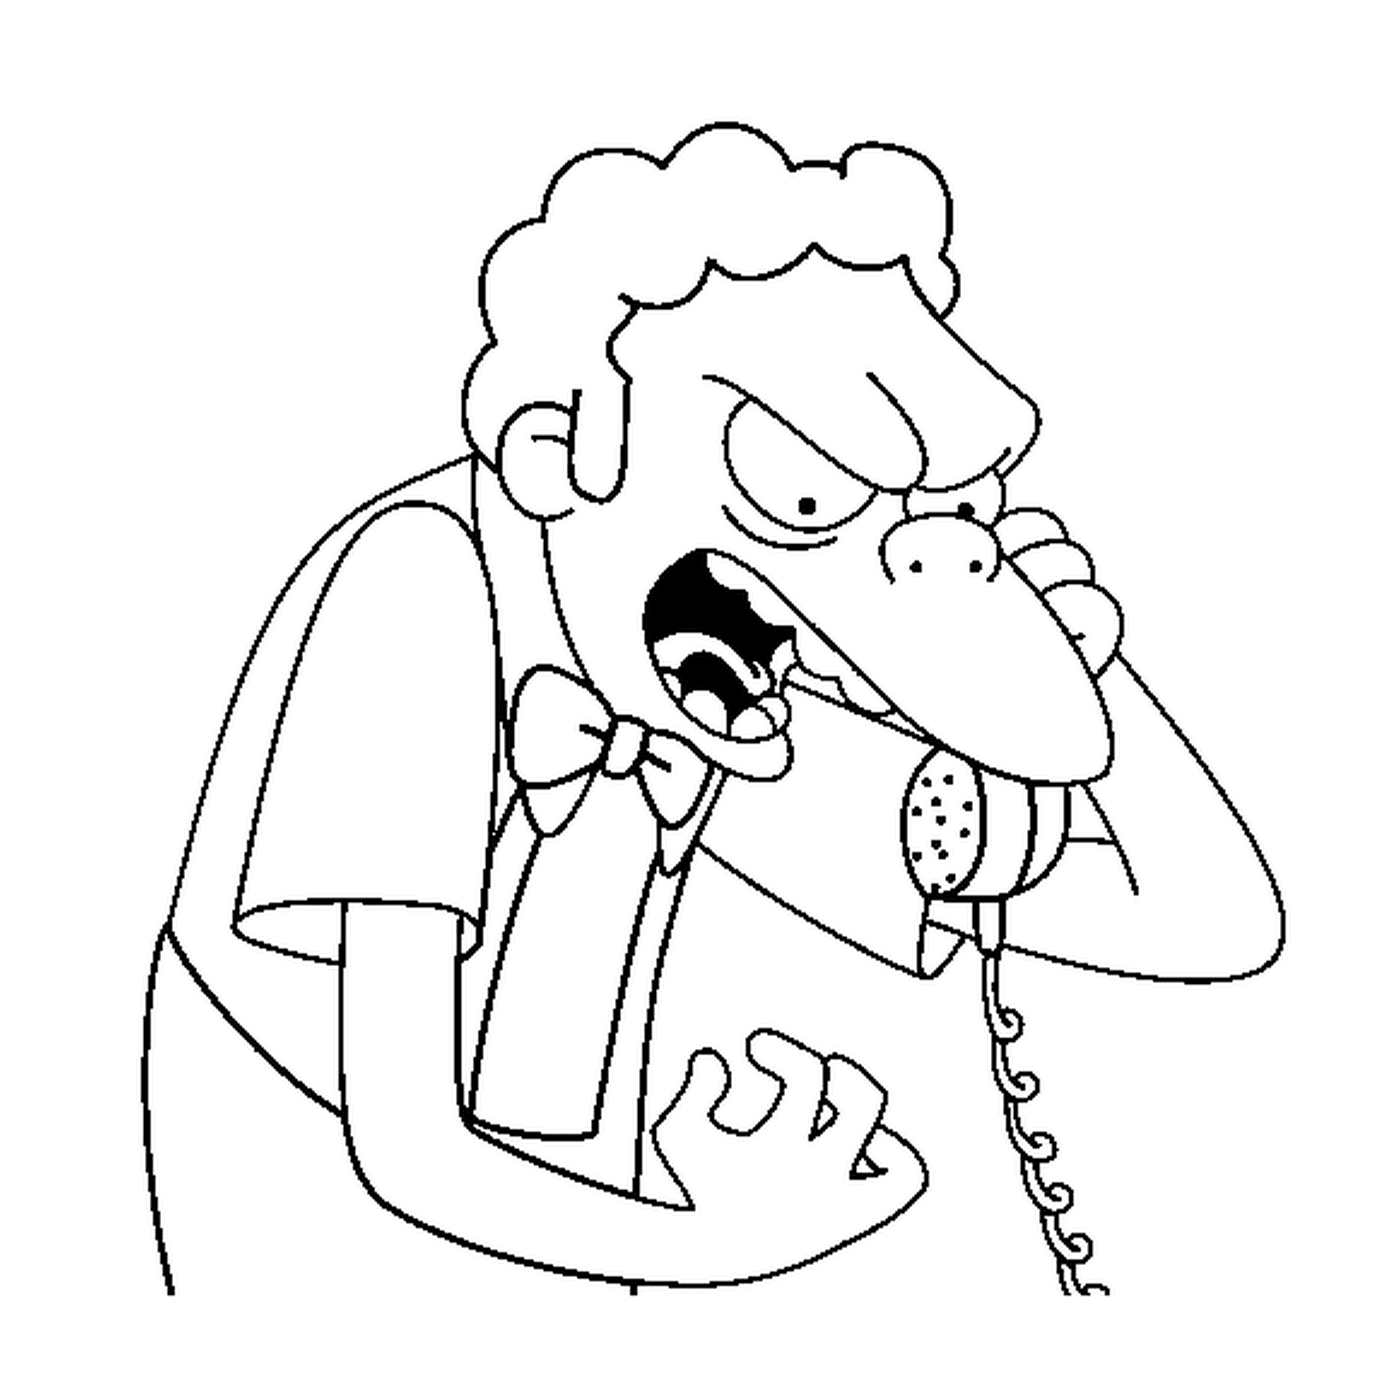  O Moe está a ficar zangado ao telefone 